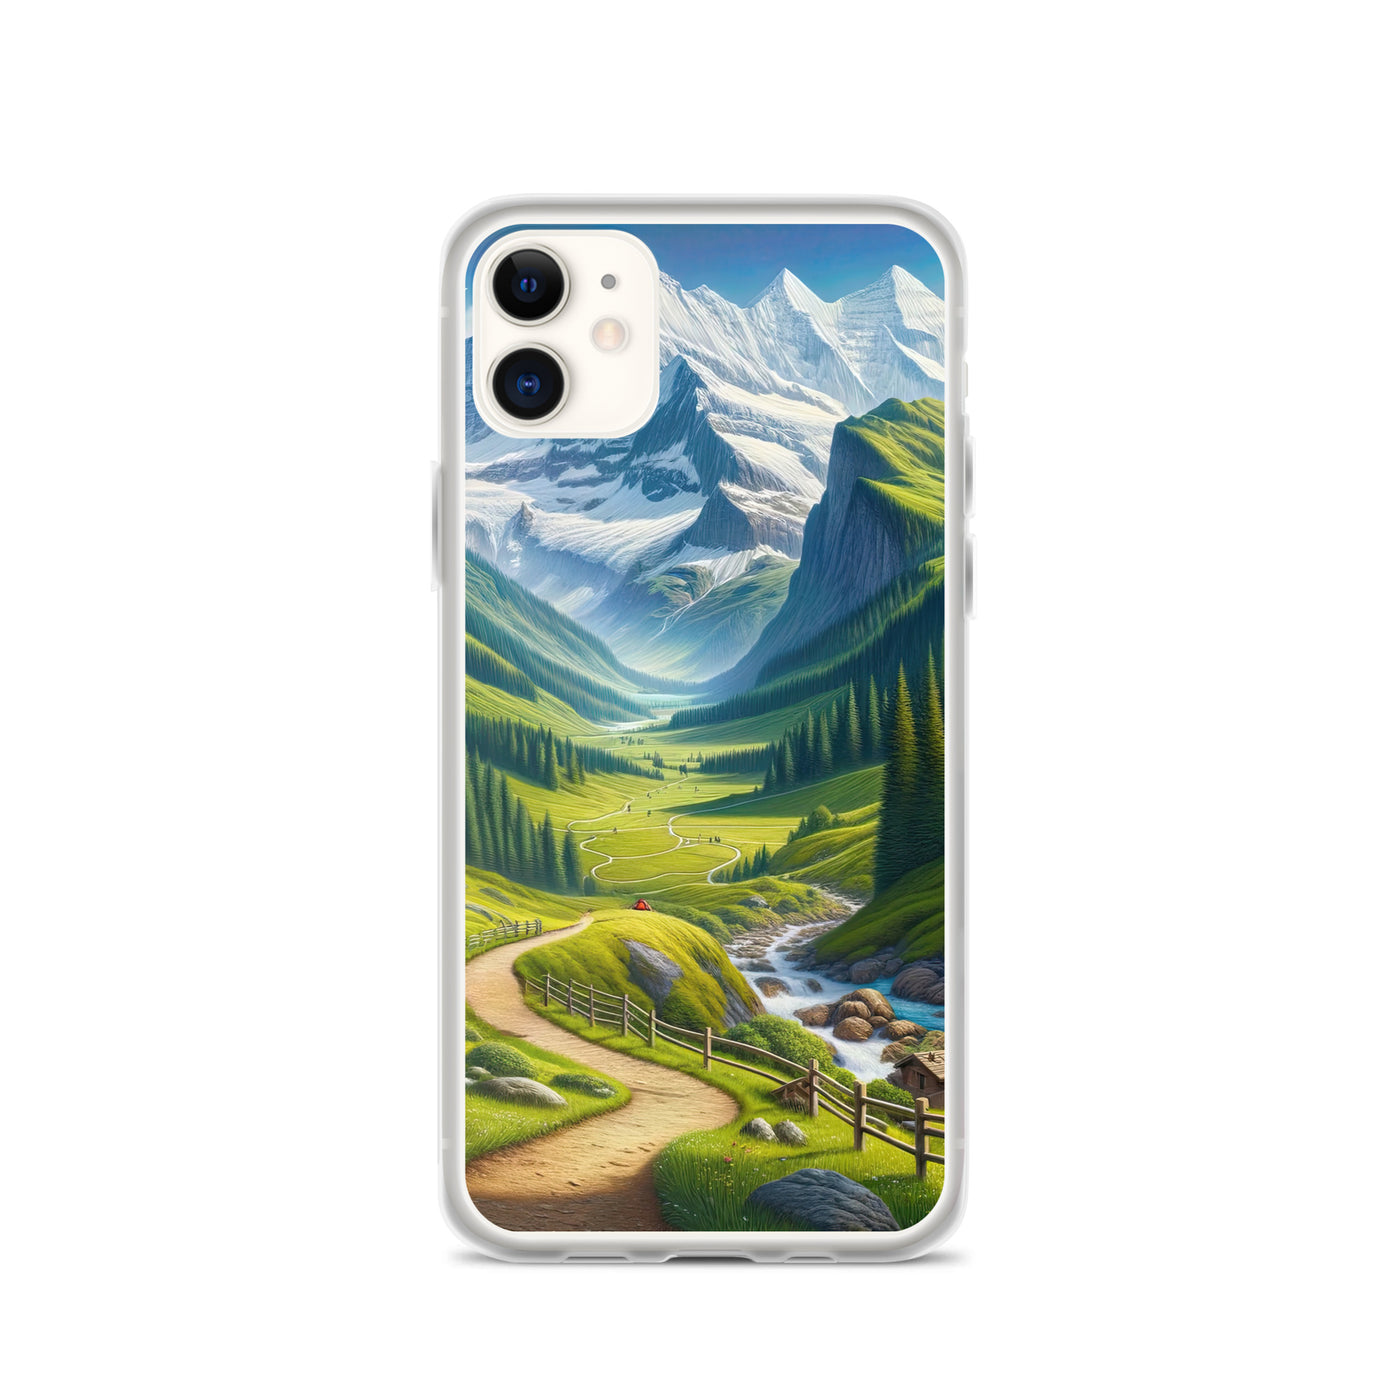 Wanderer in den Bergen und Wald: Digitale Malerei mit grünen kurvenreichen Pfaden - iPhone Schutzhülle (durchsichtig) wandern xxx yyy zzz iPhone 11